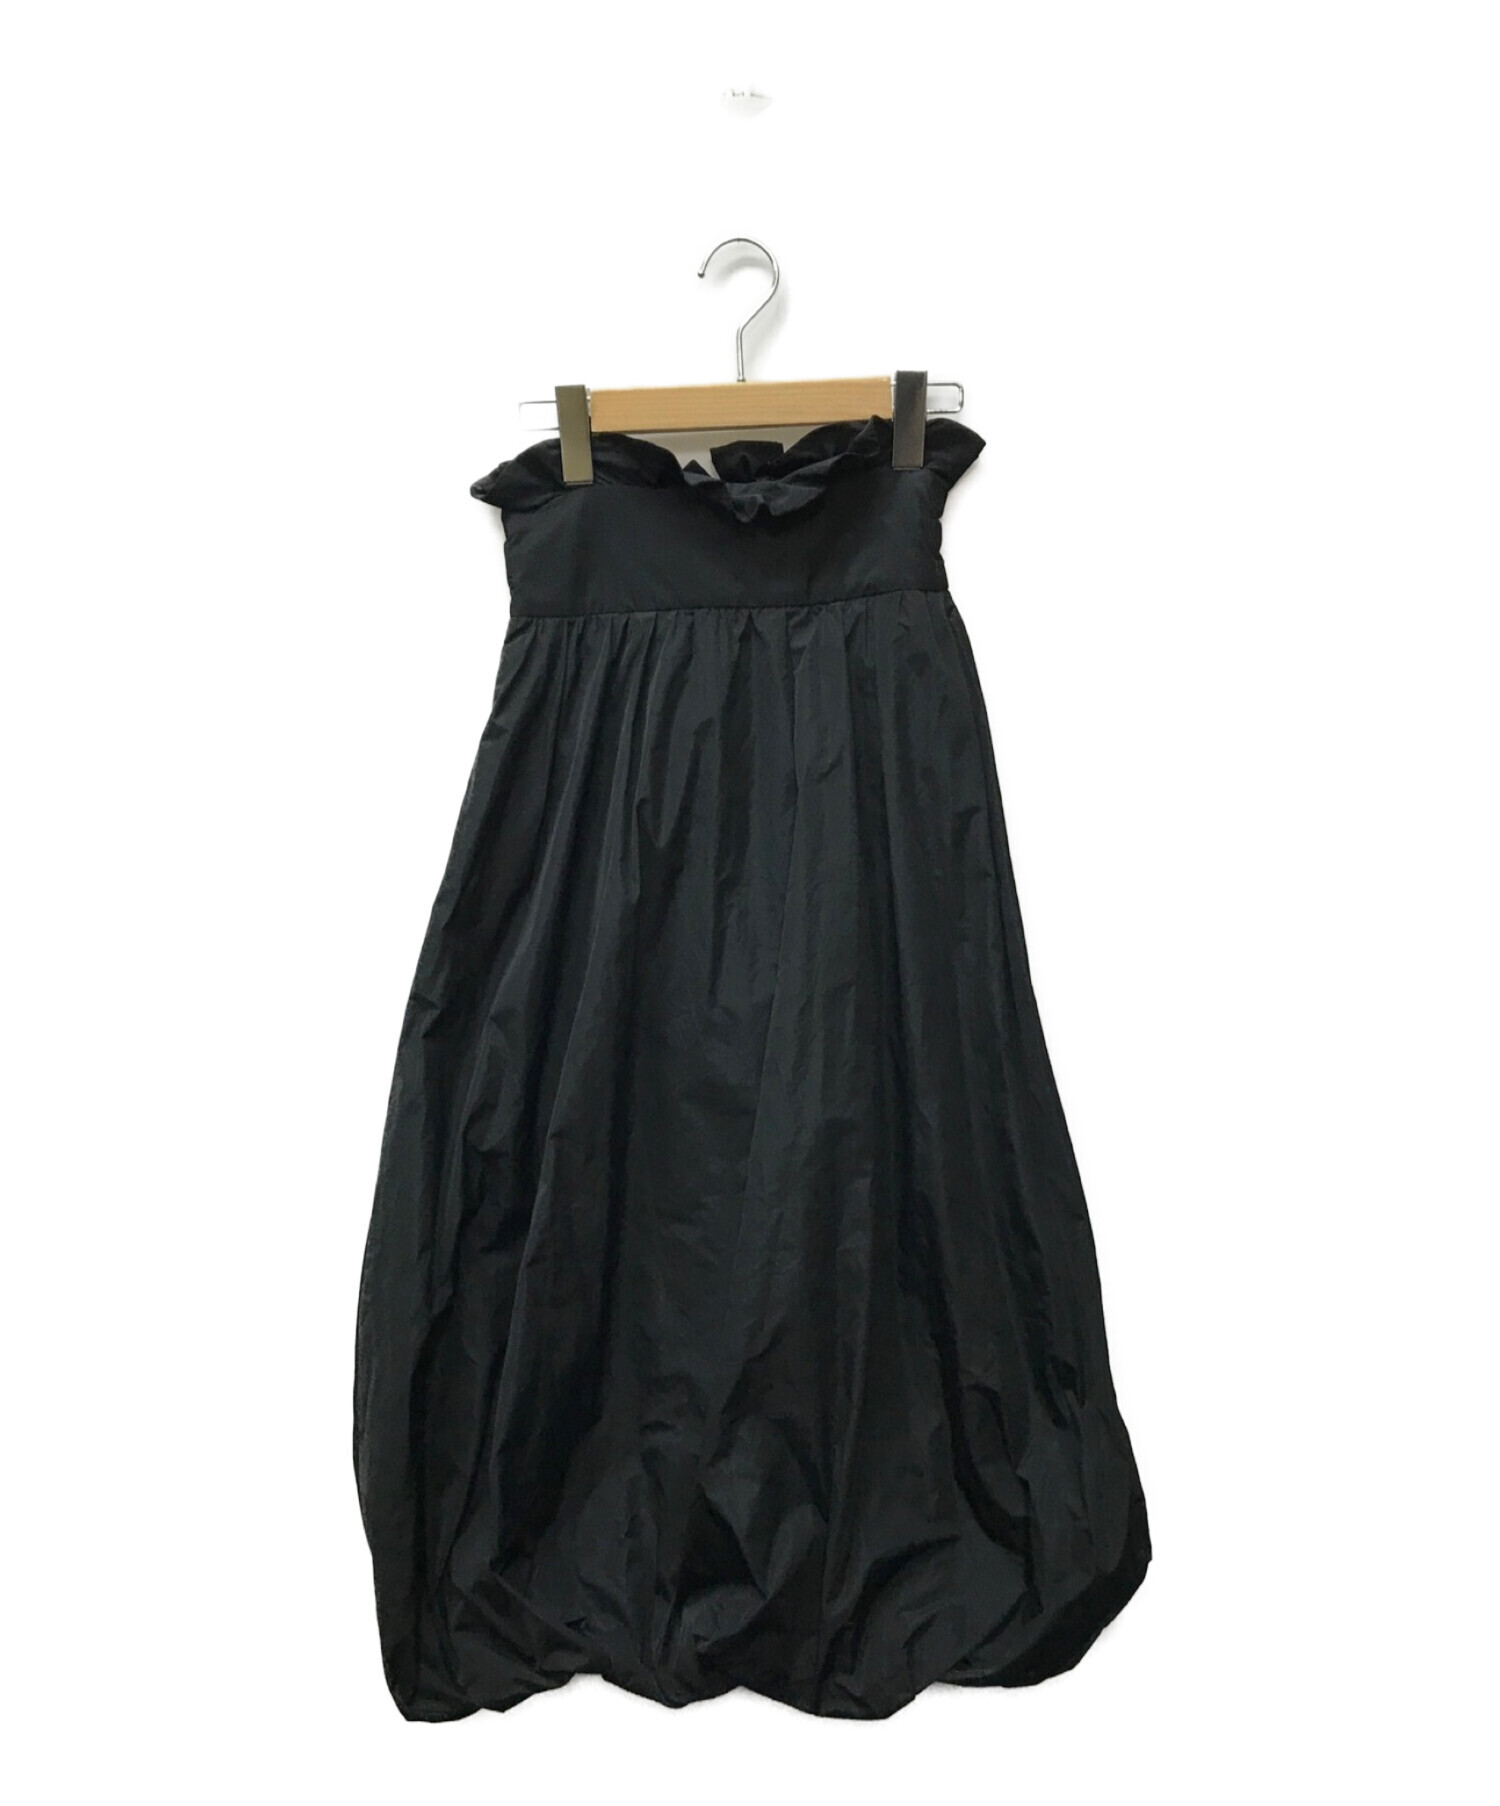 COEL (コエル) バルーンスカート ブラック サイズ:36 未使用品